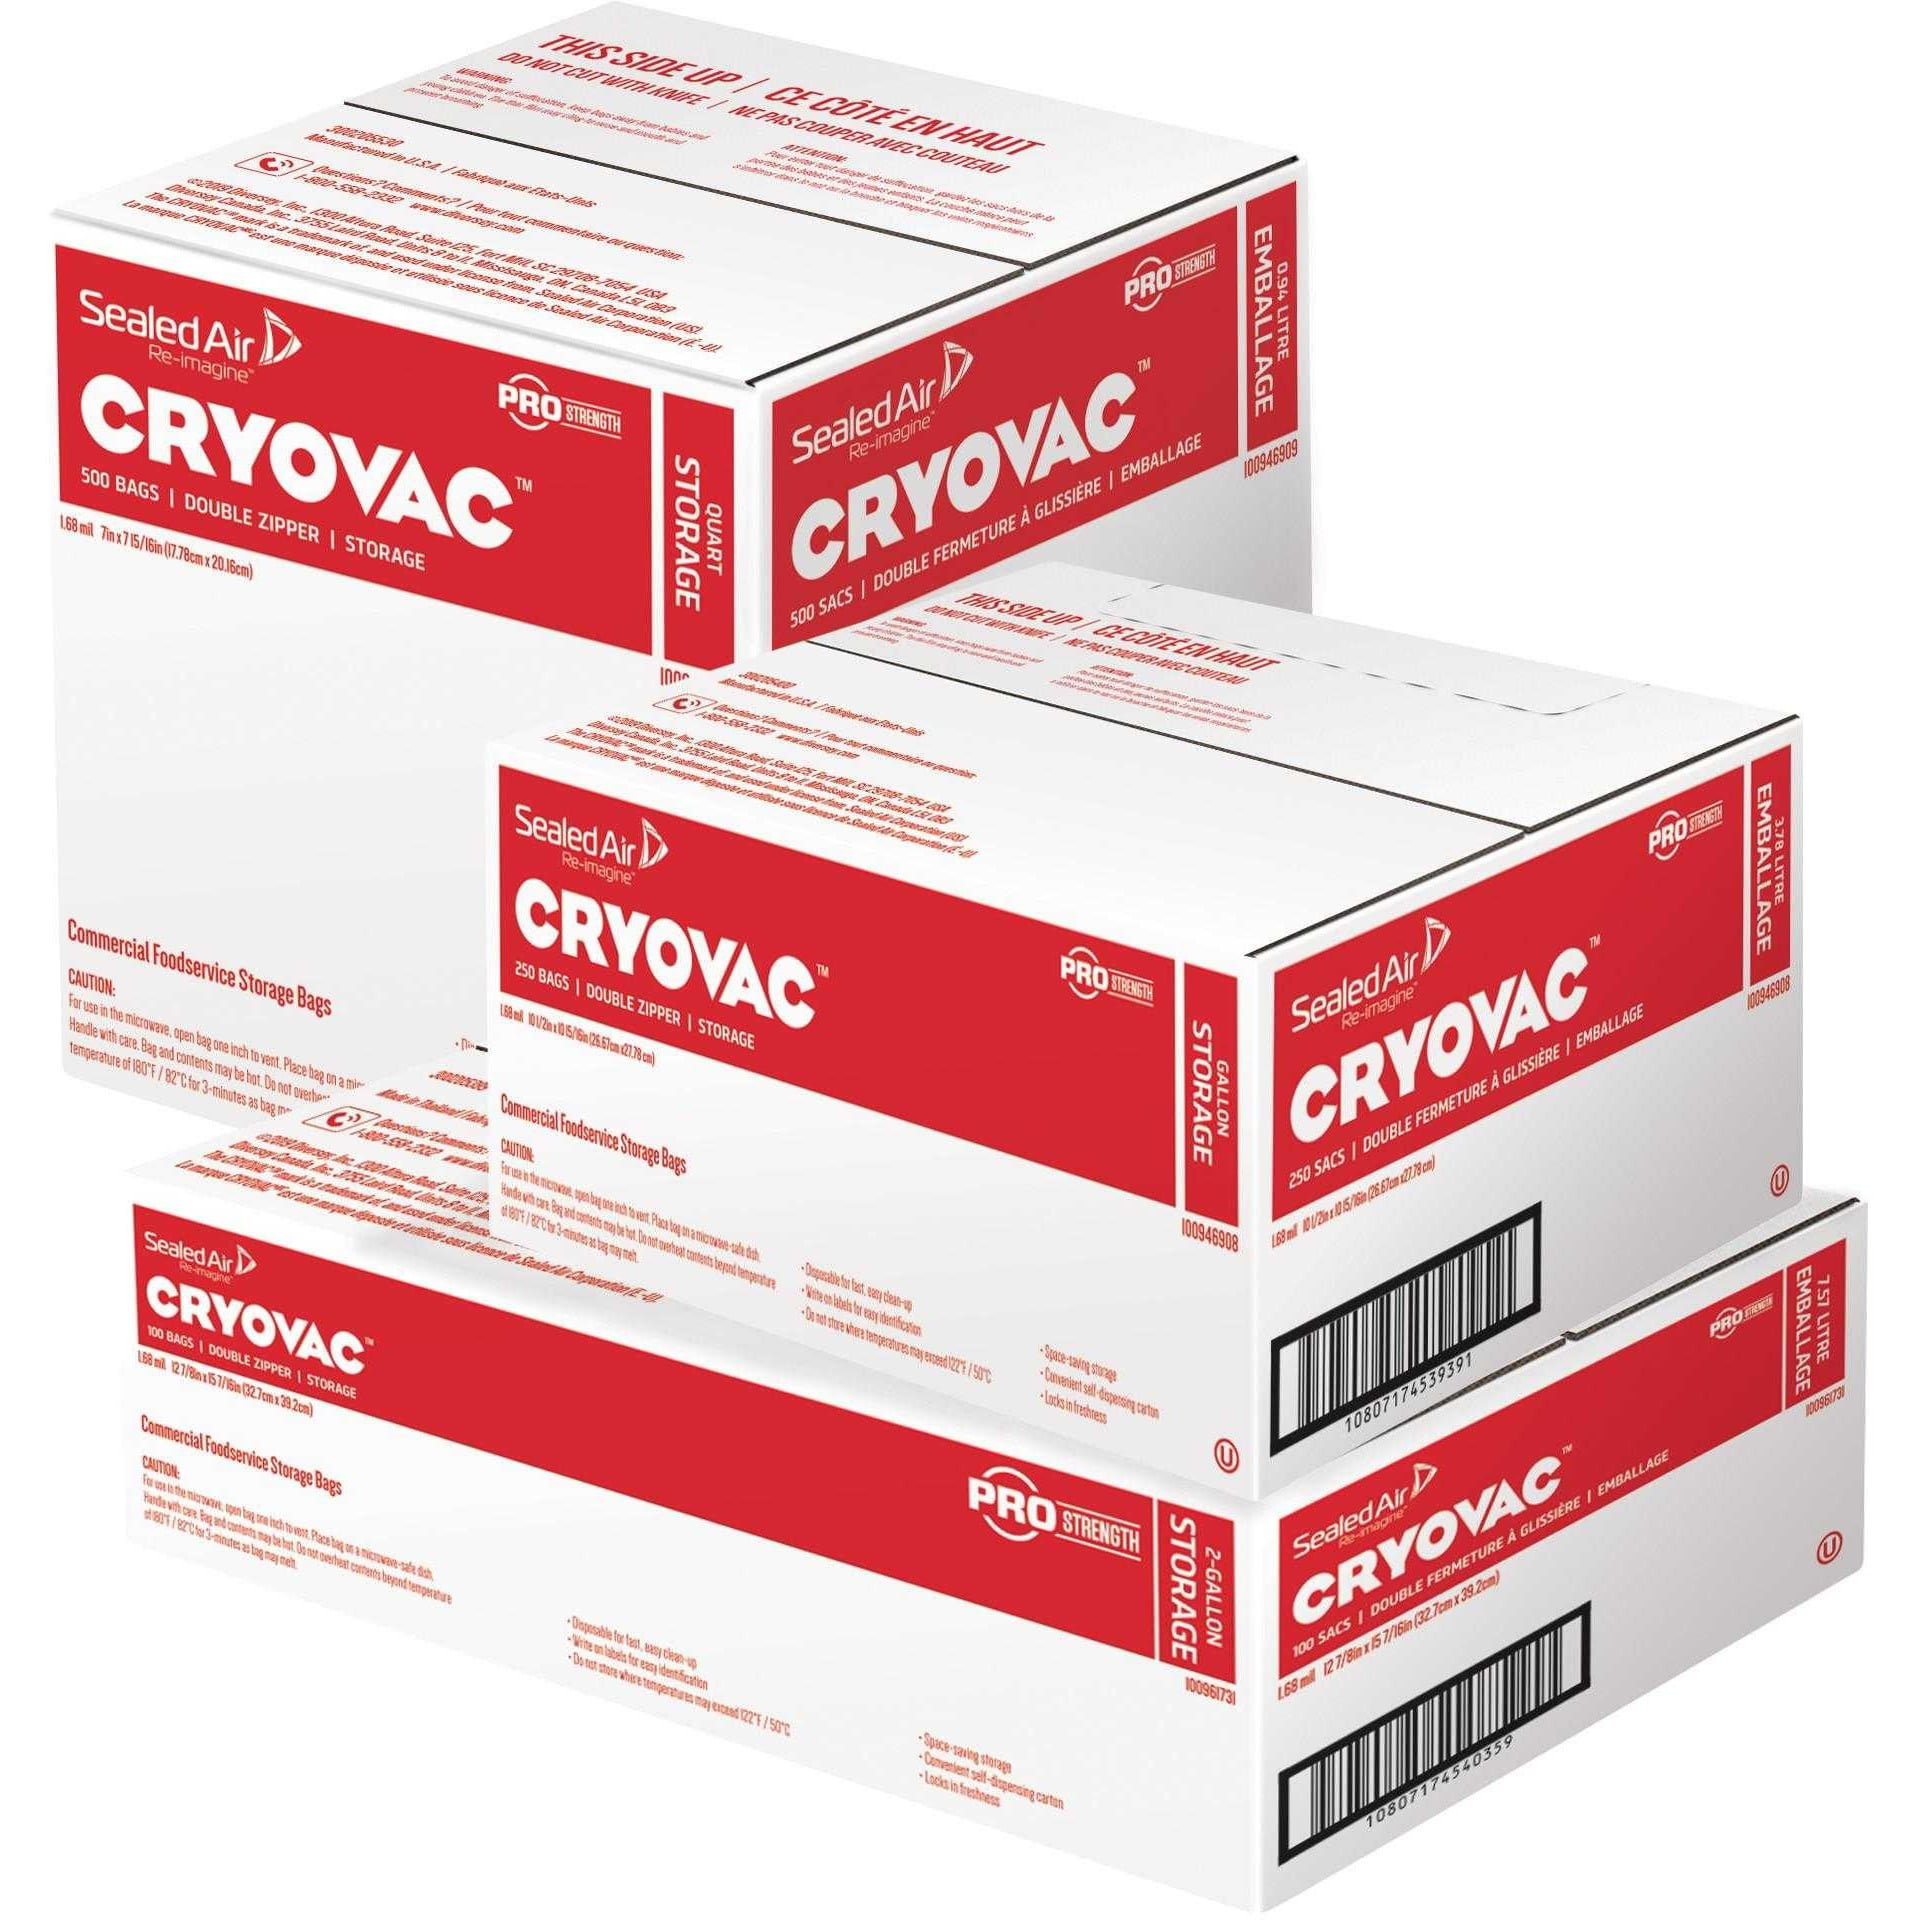 10 1/2 X 10 15/16, Clear Cryovac One Gallon Storage Bag Dual Zipper 